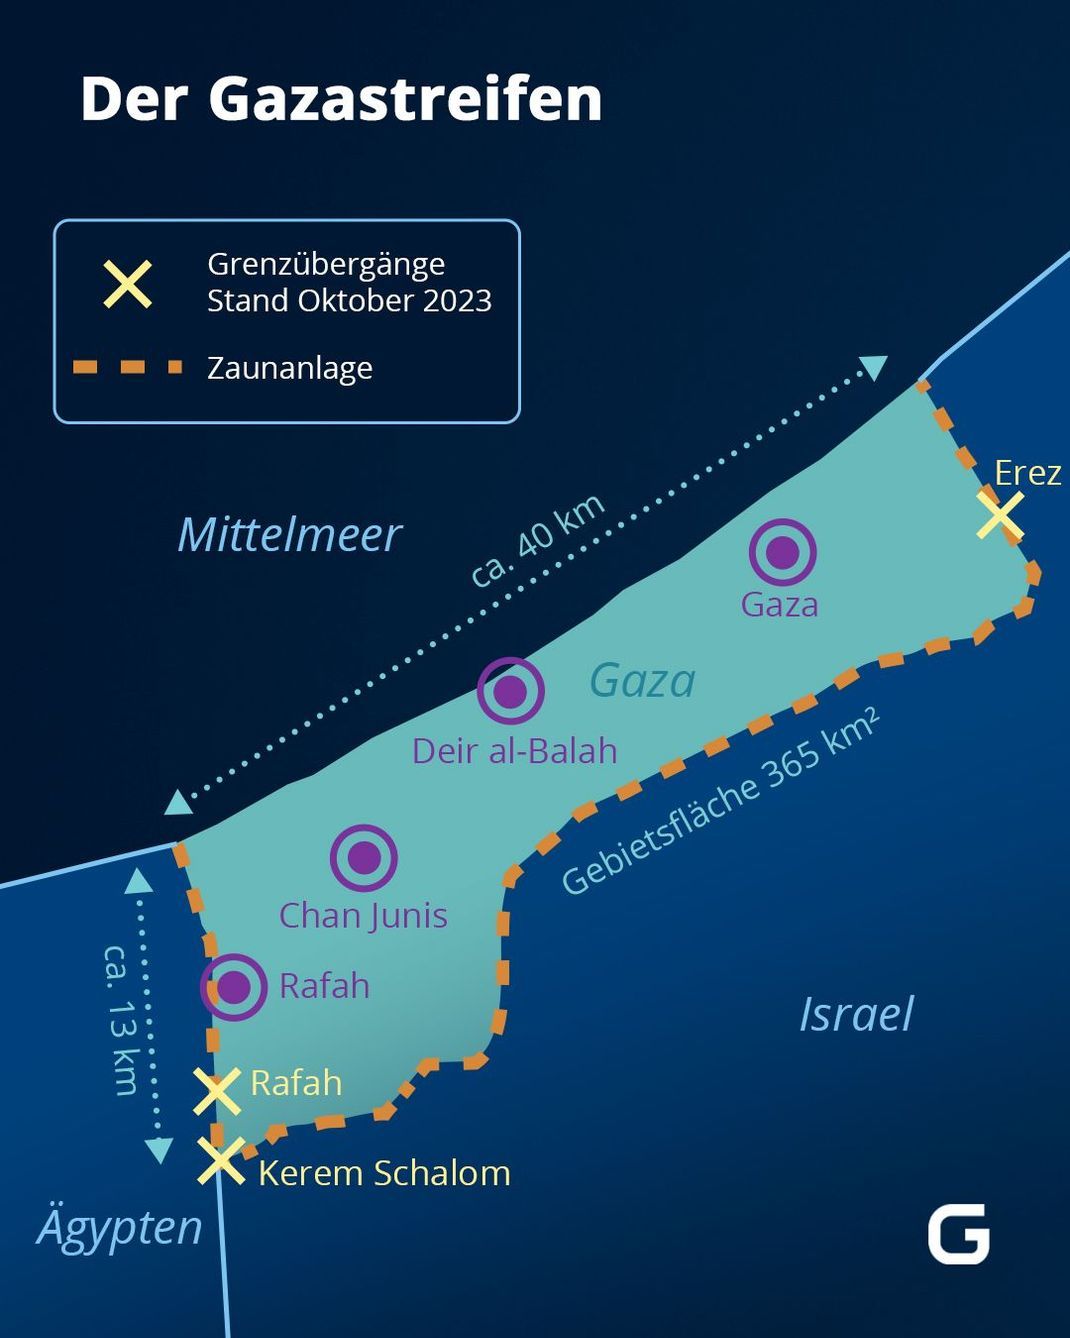 In der Infografik siehst du den Gazastreifen mit der Lage der größten Städte und der Grenzübergänge nach Israel und Ägypten.